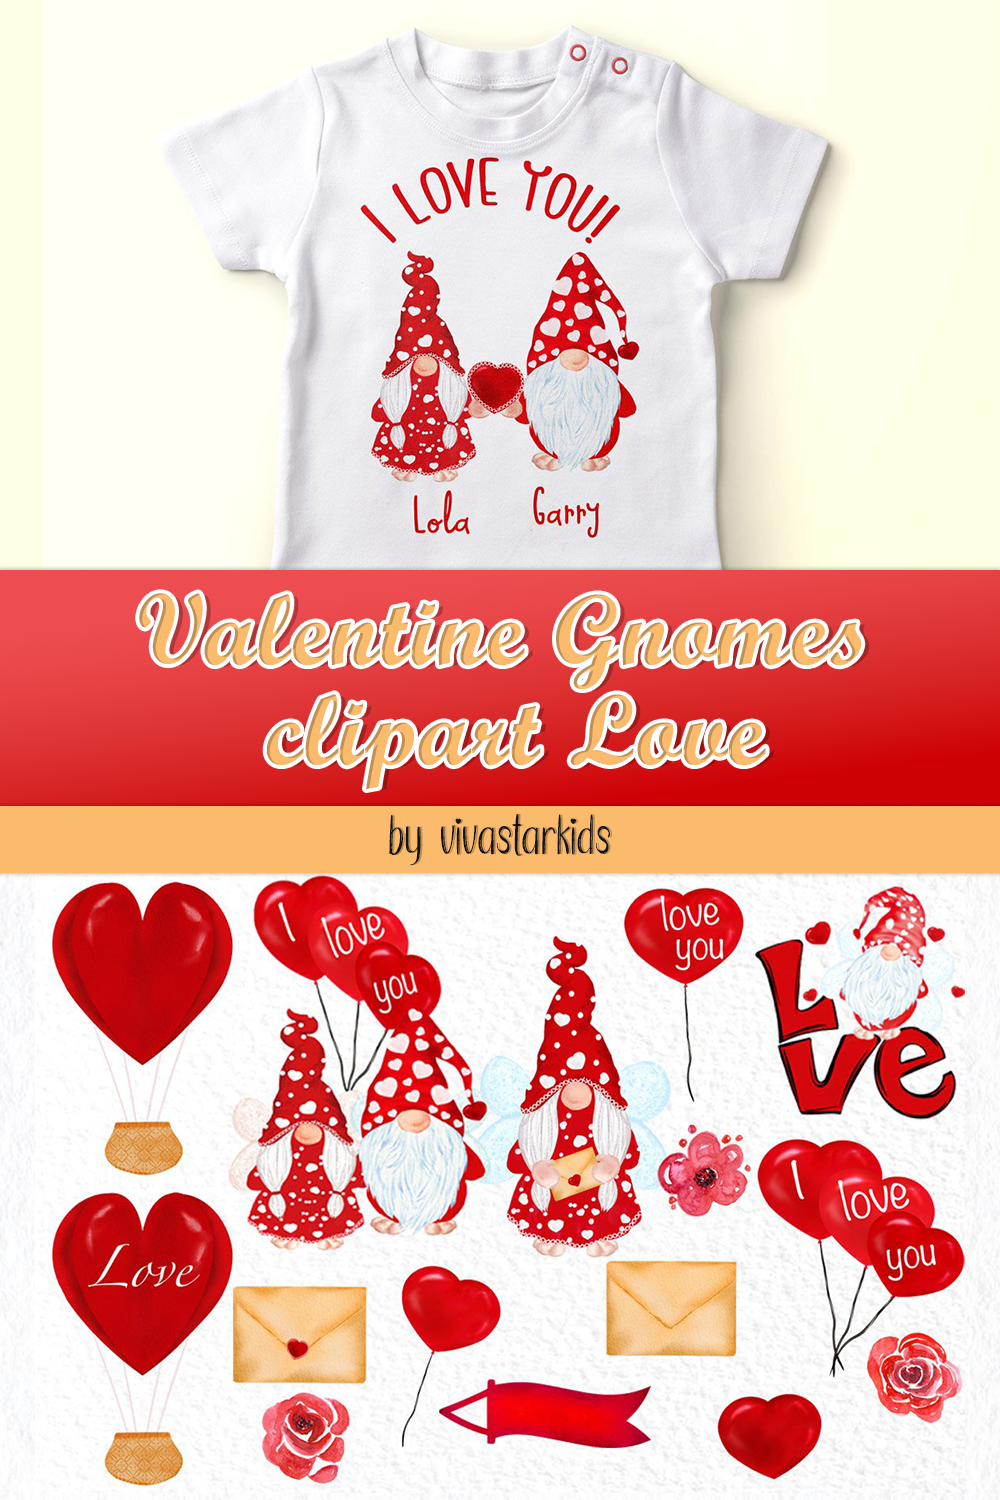 Valentine gnomes clipart love of pinterest.